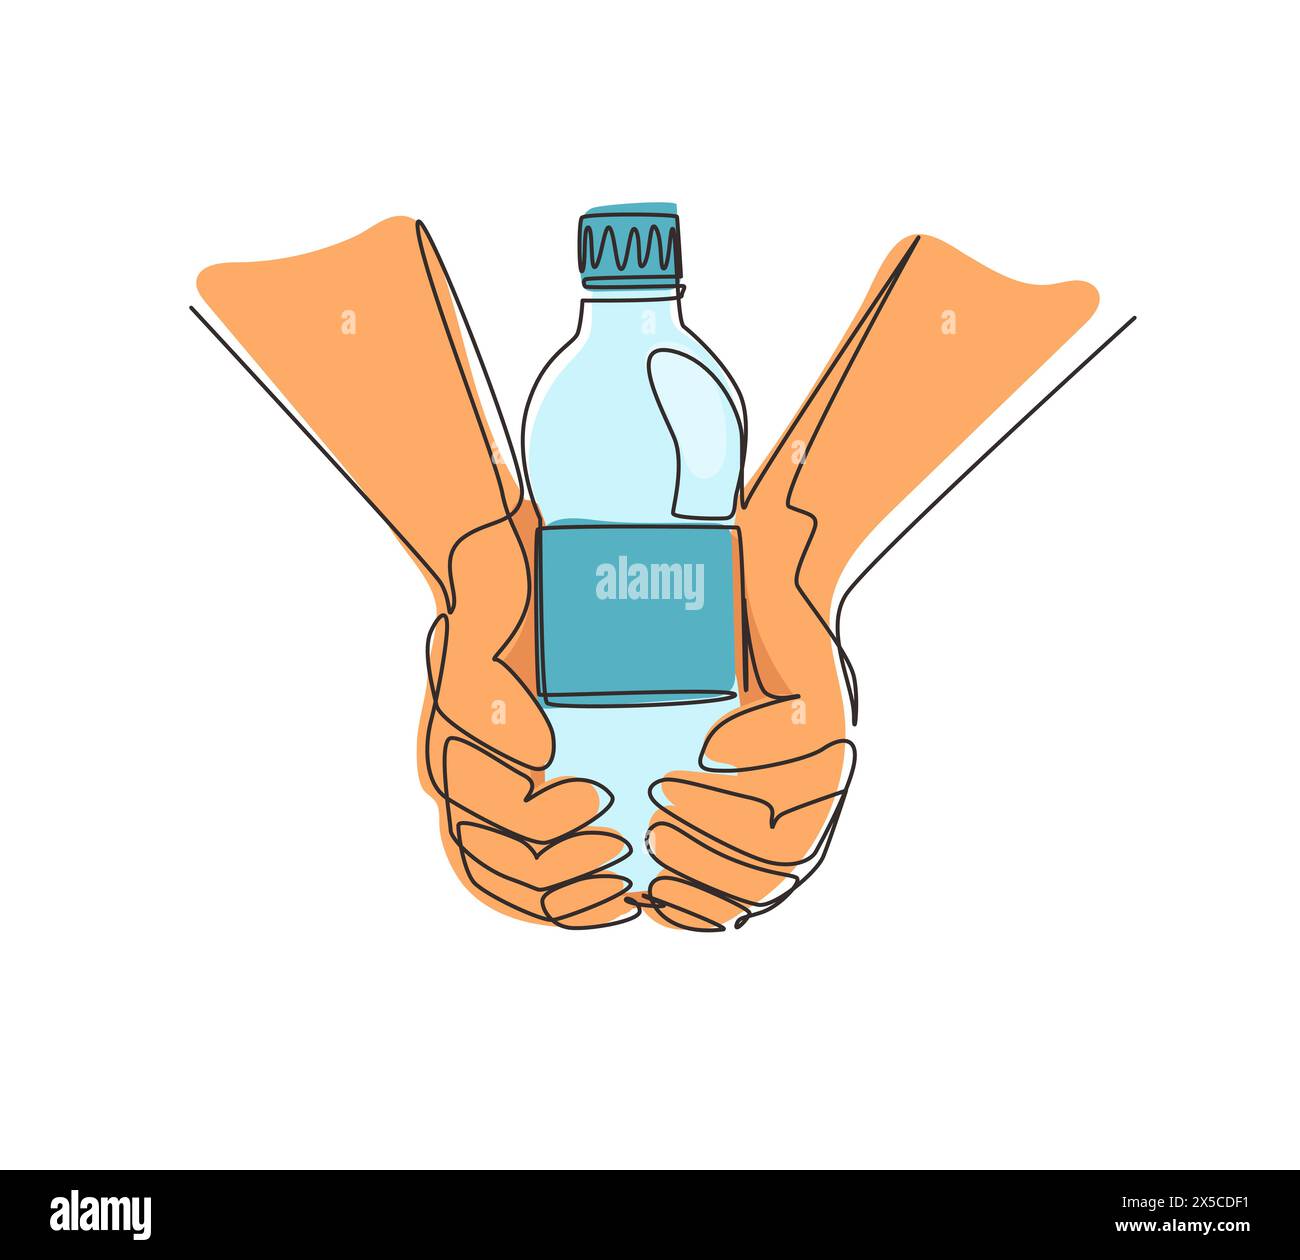 Linea singola continua per disegnare le mani tenendo in mano una bottiglia di acqua potabile pura rinfrescante e spruzzare su sfondo caldo con affamati e assetati Illustrazione Vettoriale